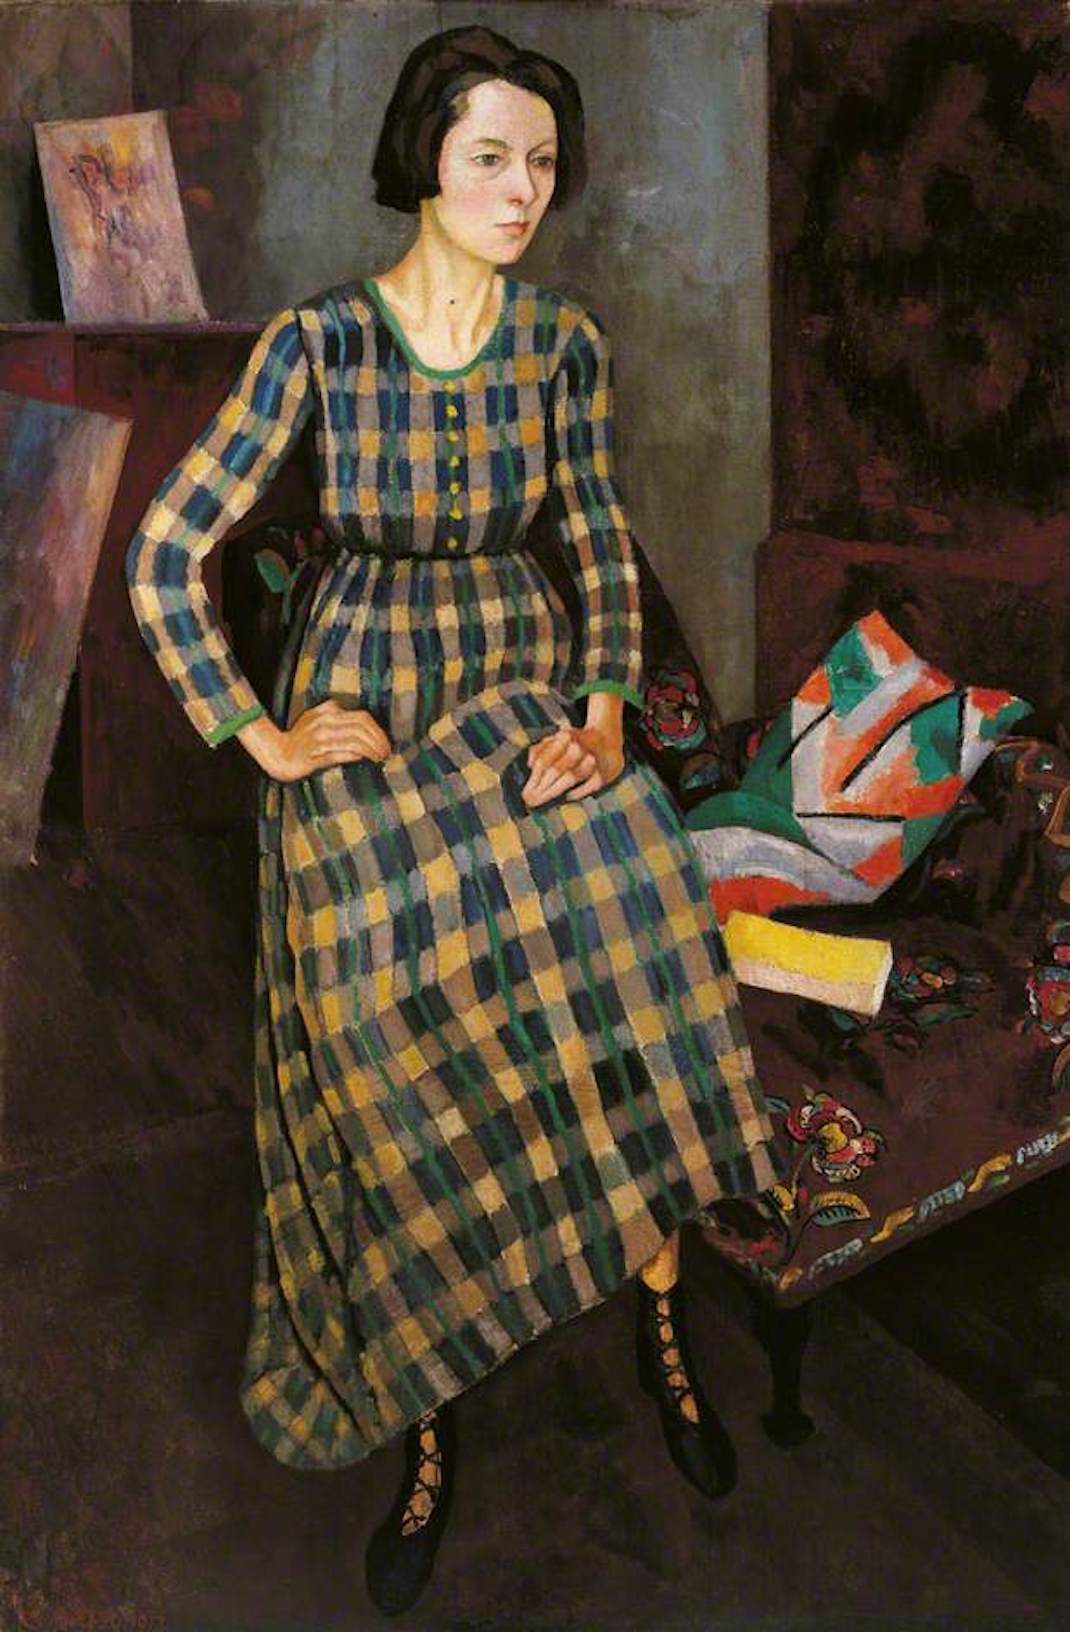 Πορτρέτο της ζωγράφου Νίνα Χάμνετ που φορά ένα φόρεμα των Omega Workshops, από τον Ρότζερ Φράι (1917)